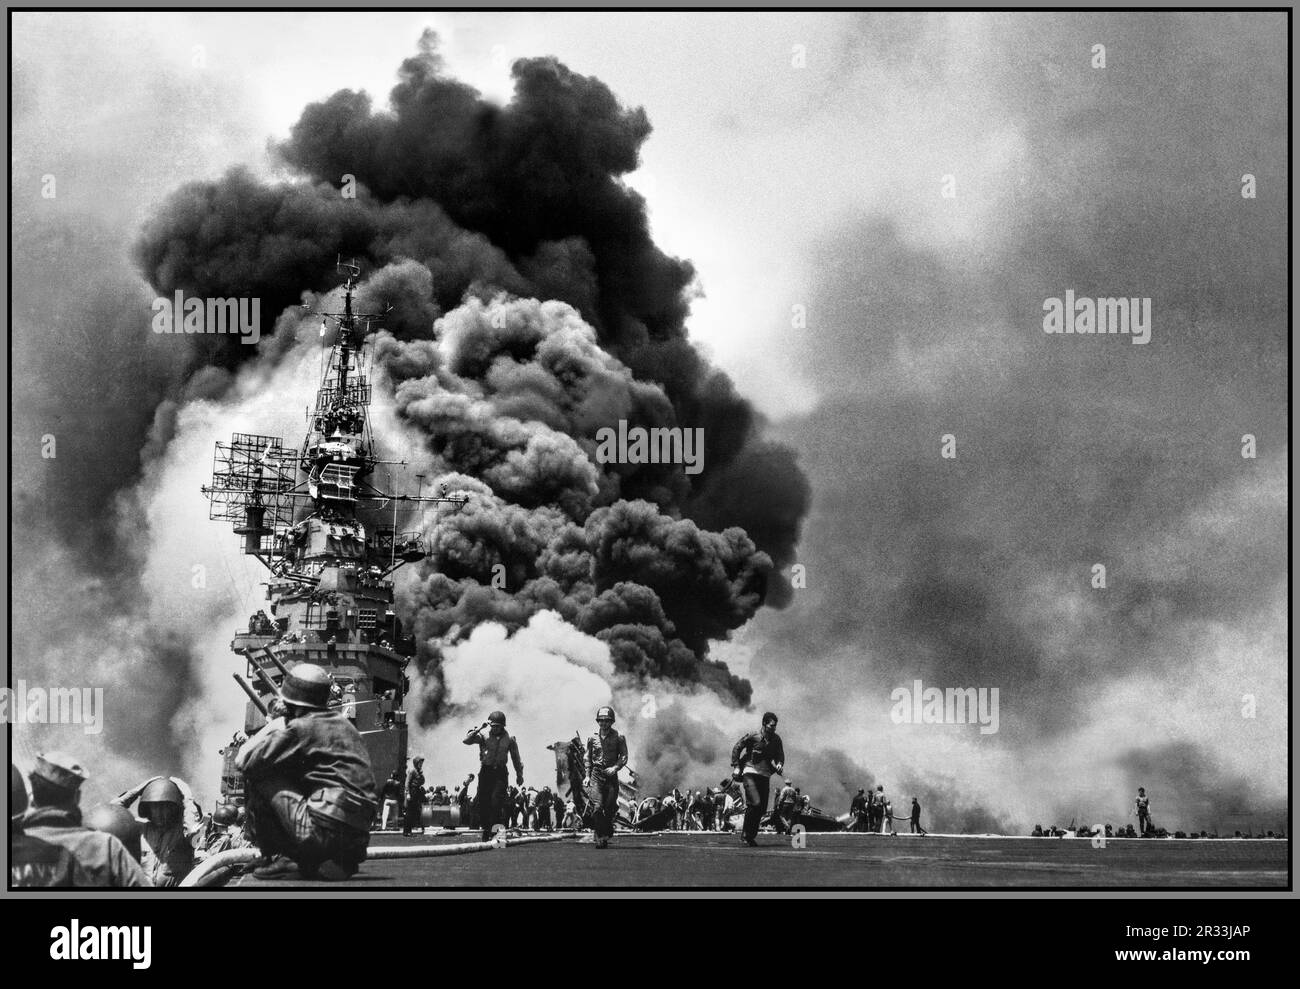 WW2 Pacific 'USS Bunker Hill' Aircraft Carrier (CV-17), nachdem er am 11. Mai 1945 von zwei japanischen Suizidflugzeugen Kamikaze in 30 Sekunden vor Kyushu getroffen wurde. Tot-372. Verwundet-264. 2. Weltkrieg 2. Weltkrieg im Pazifik Amerika USA / Imperial Japan Stockfoto